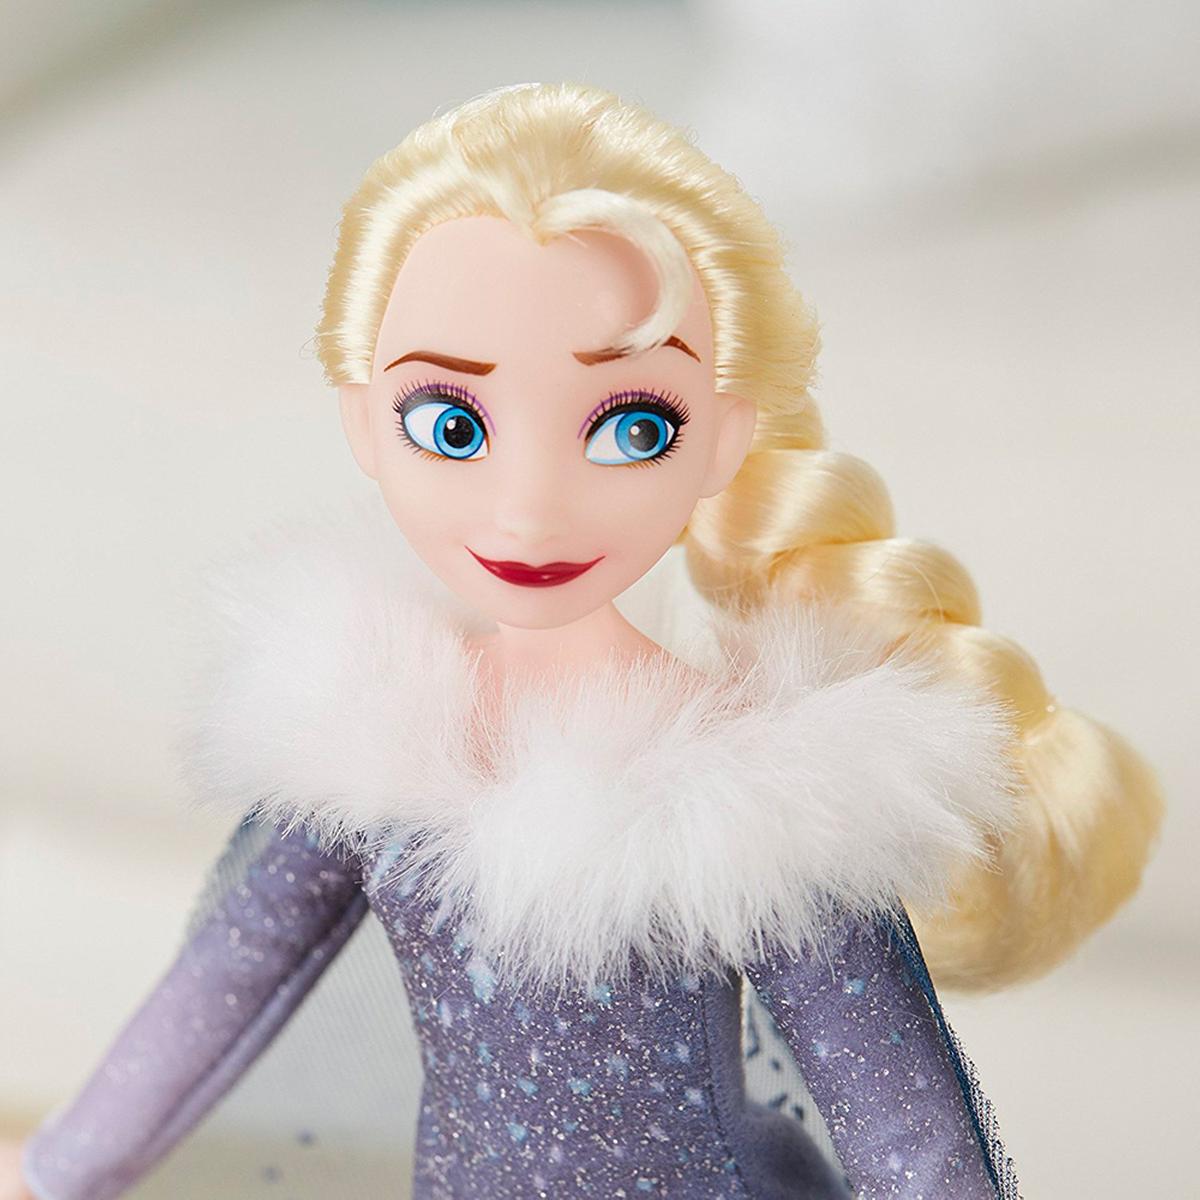 Boneca Princesa Disney - Elsa Musical - Canta Livre Estou - Frozen